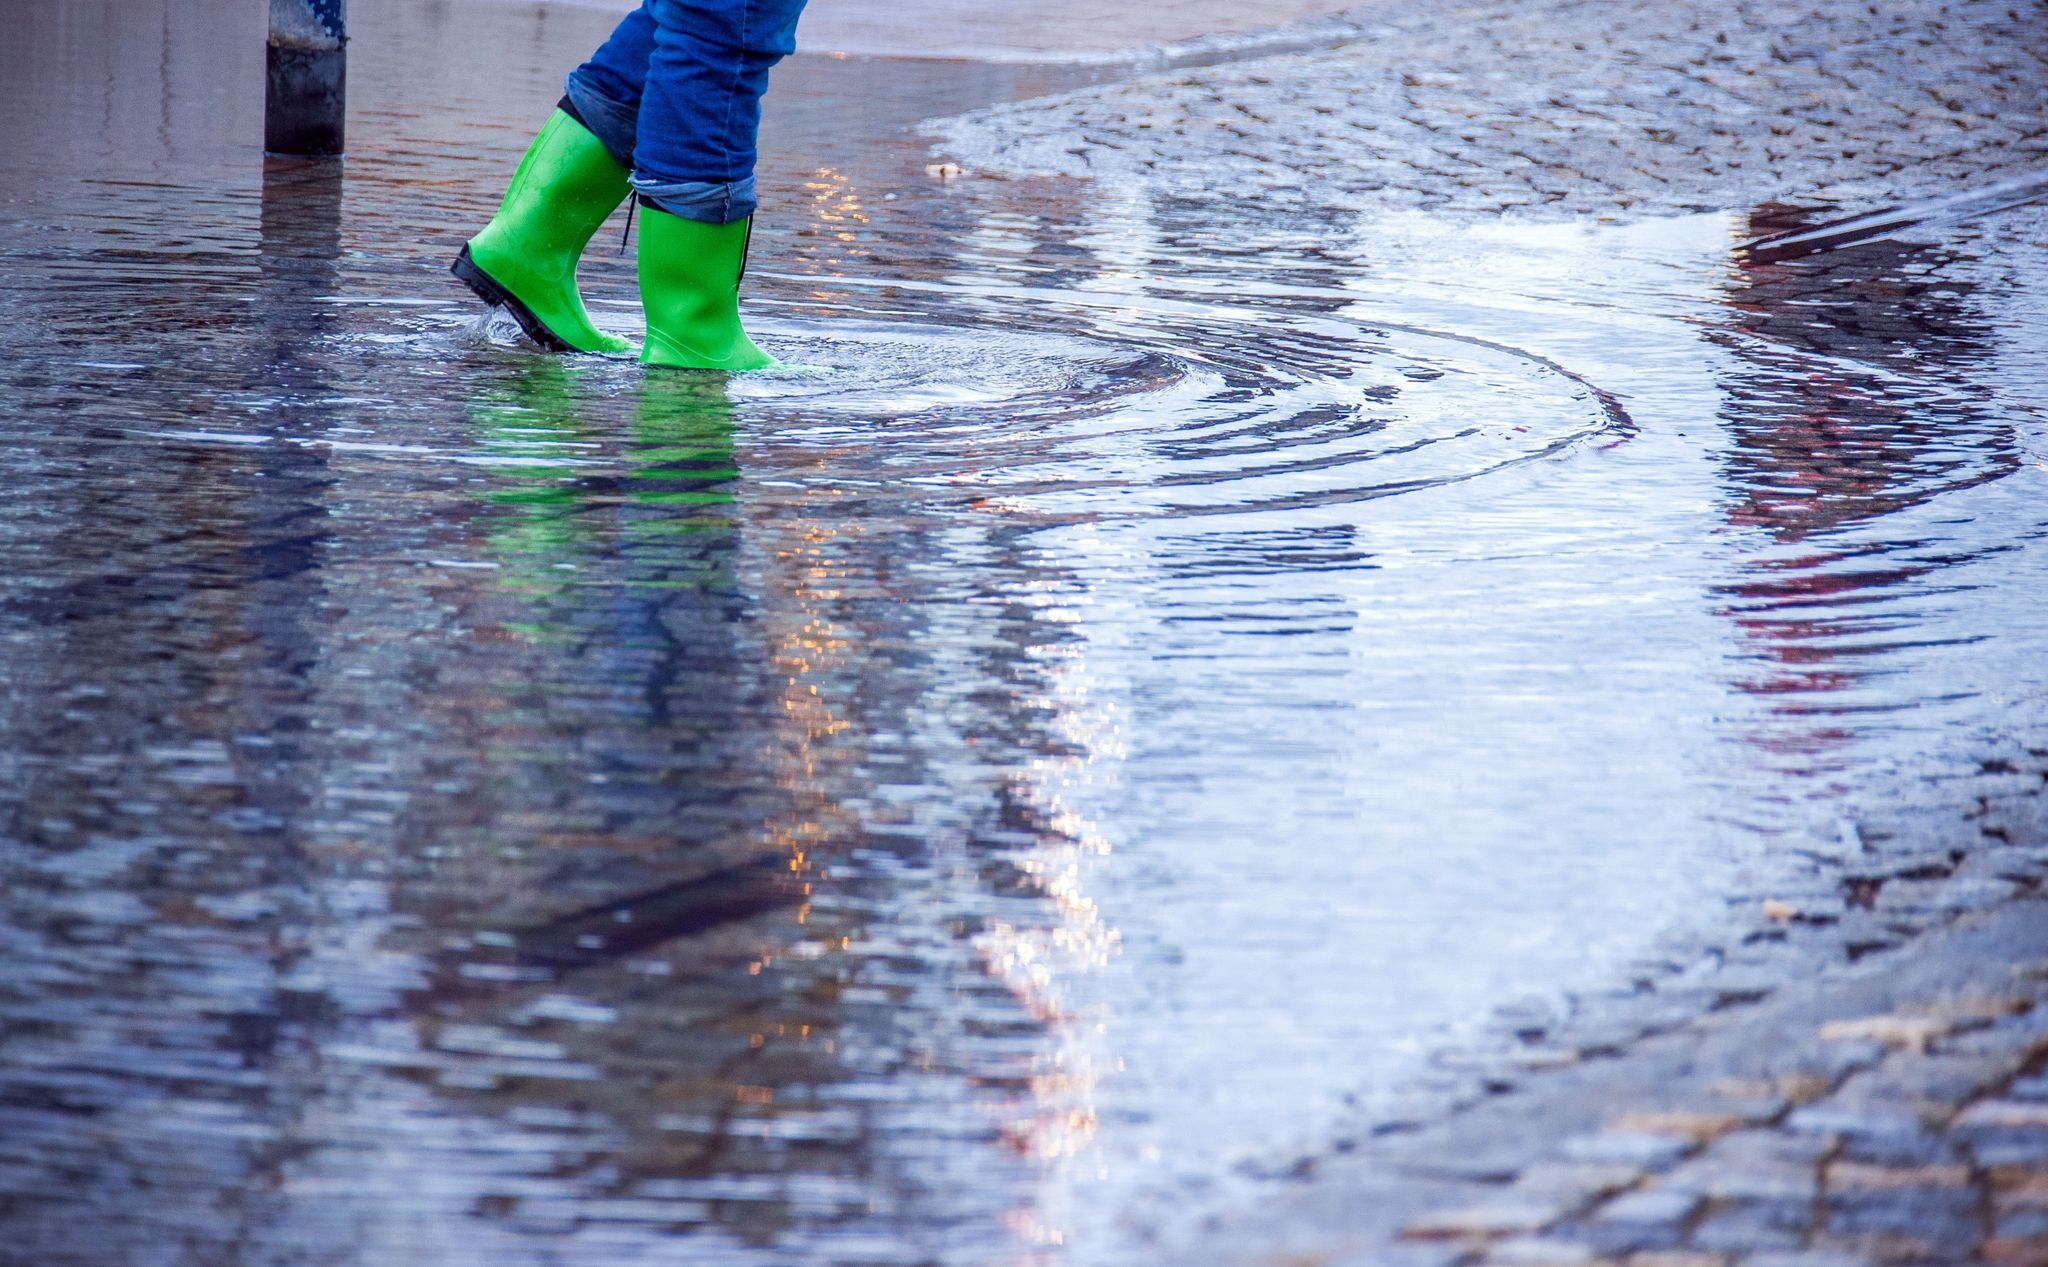 Mit Gummistiefeln geht eine Frau über eine leicht überflutete Straße.